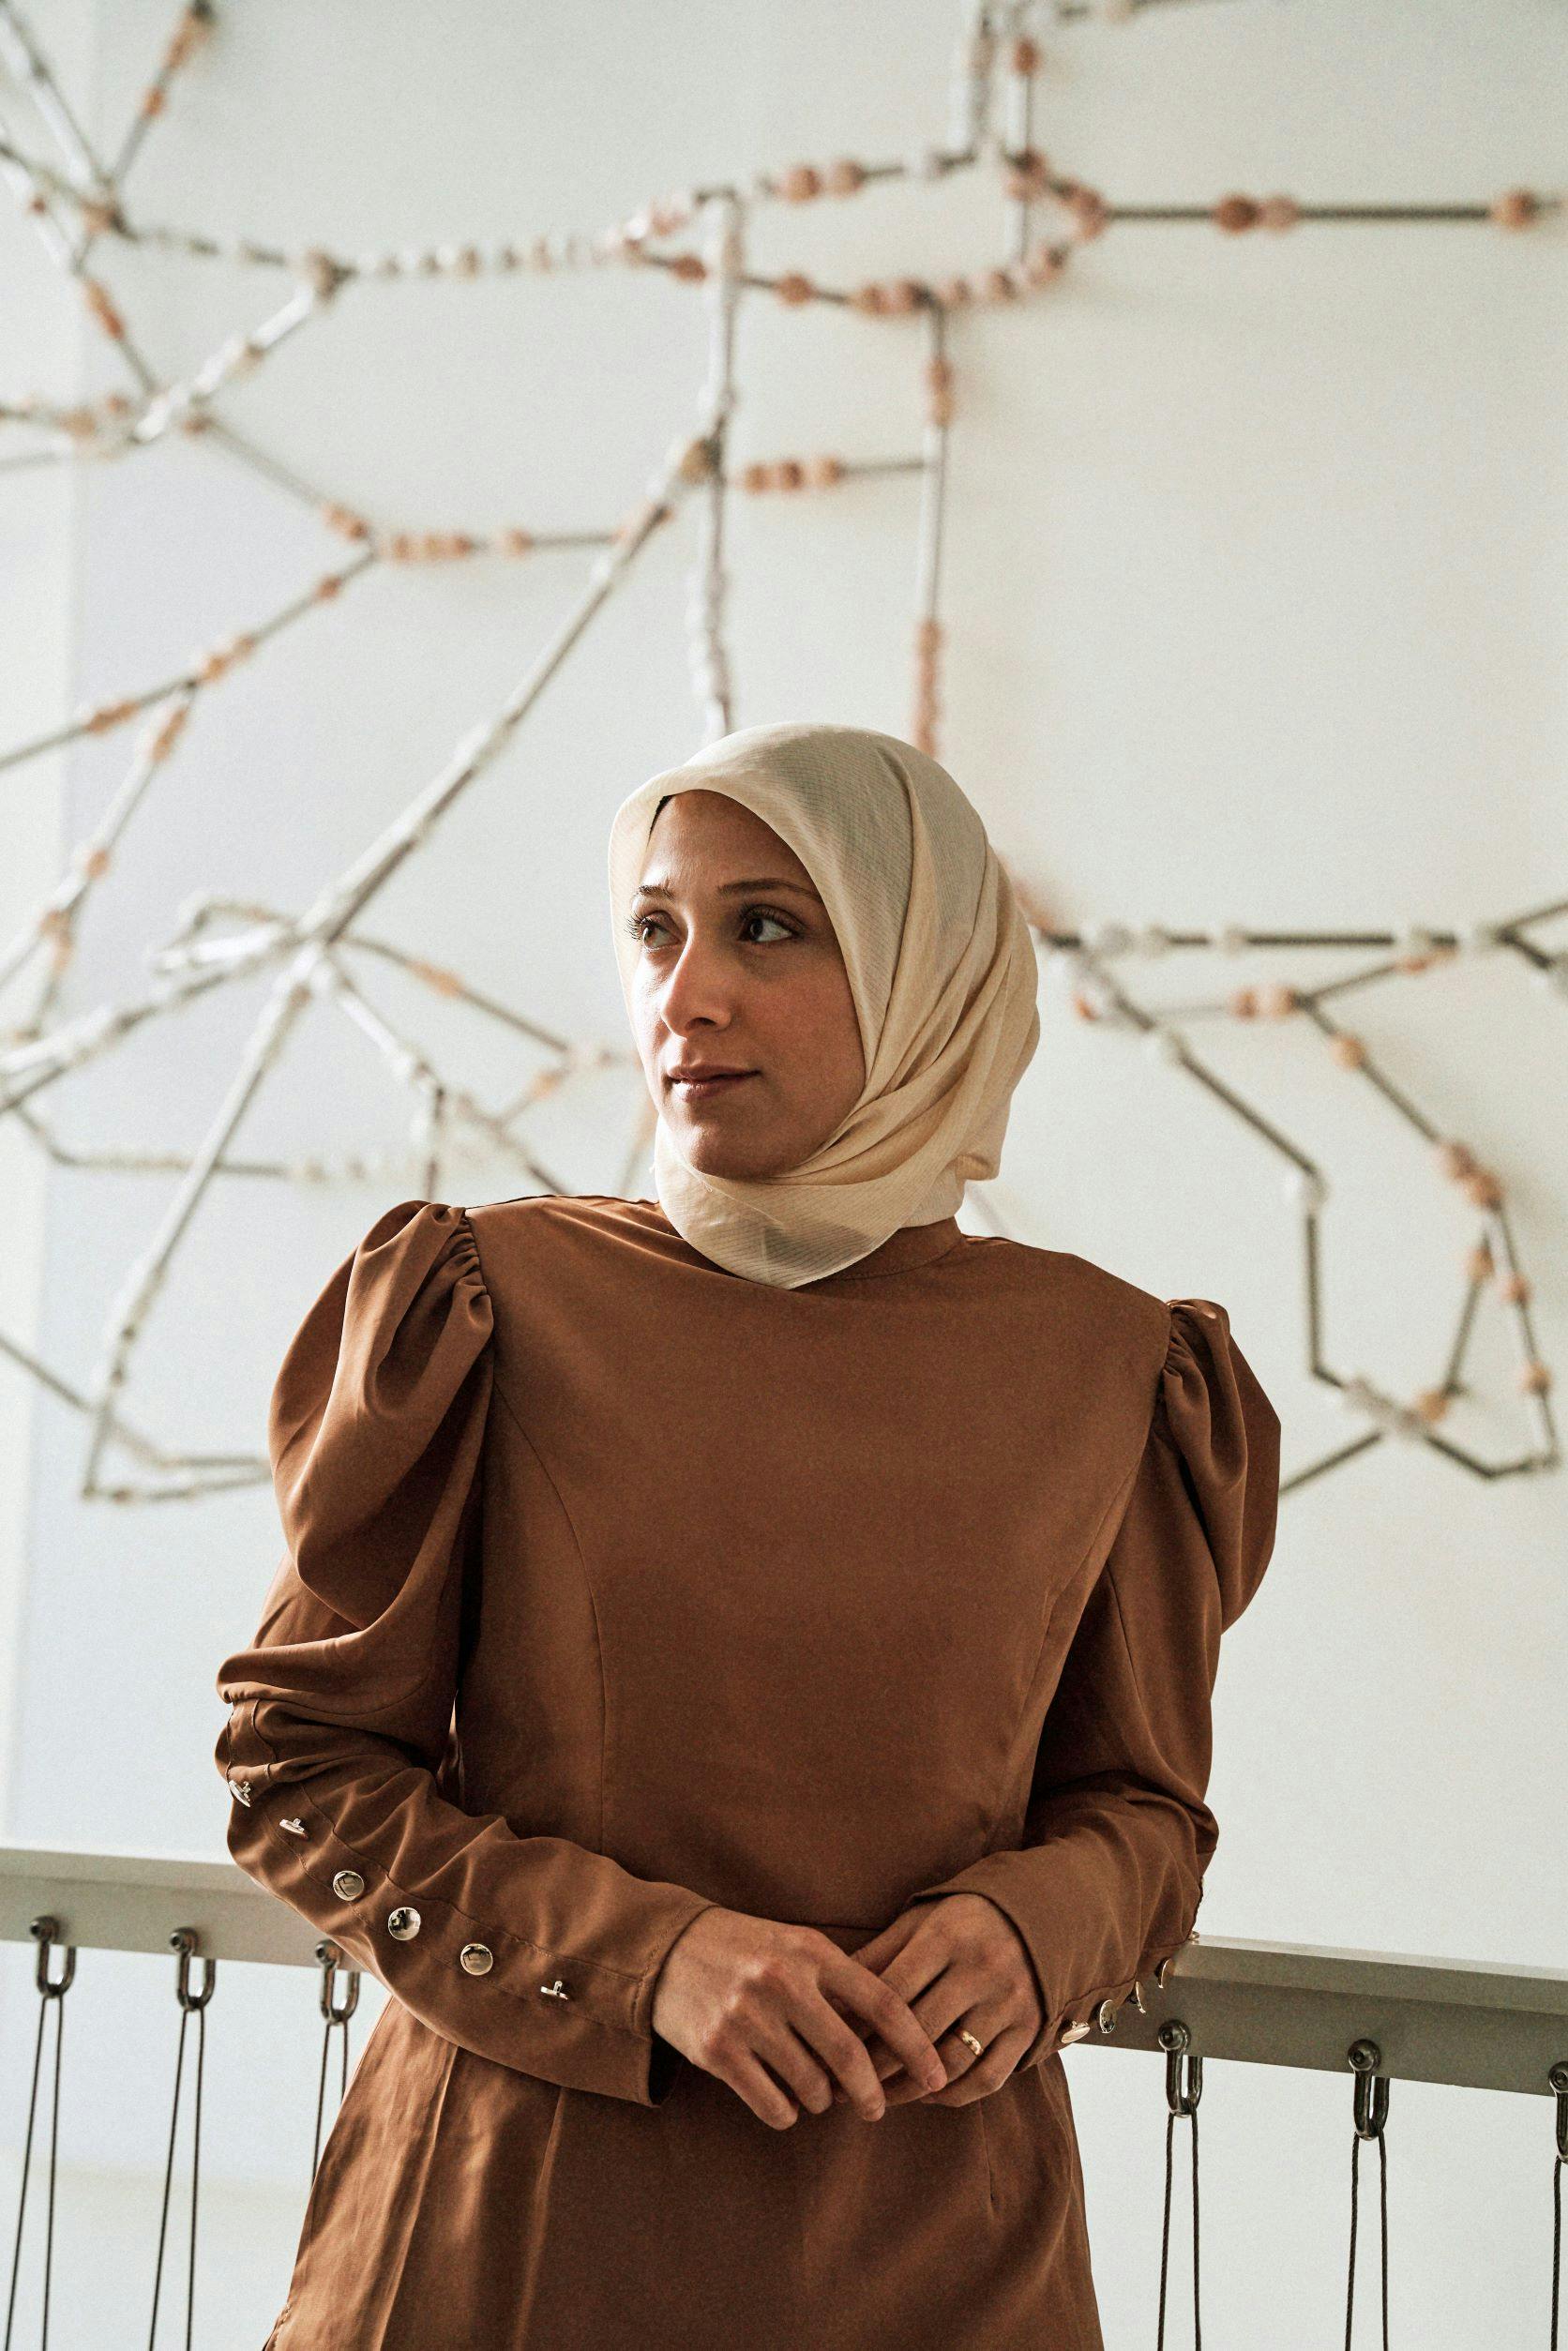 Fatima AlZahraa Alatraktchi